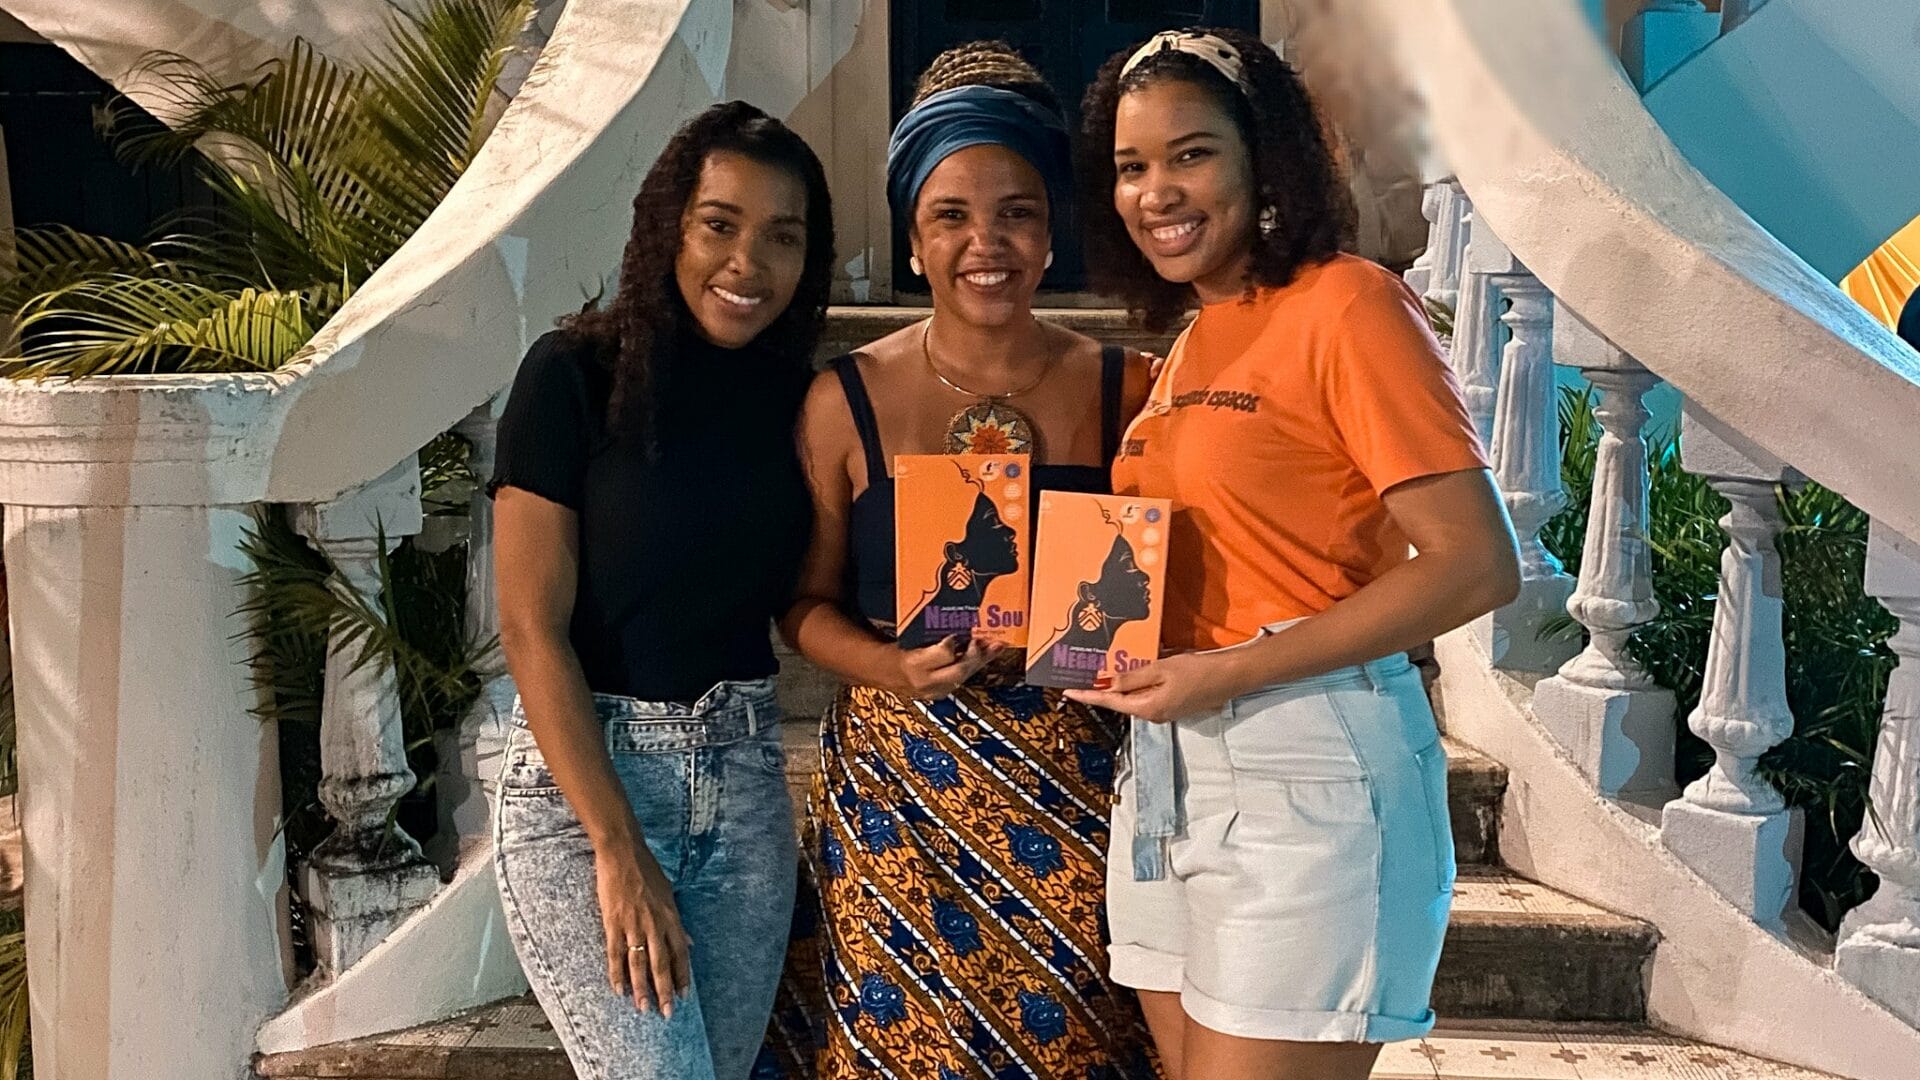 Mulheres negras felizes e sorrindo: é esse o Brasil que eu quero